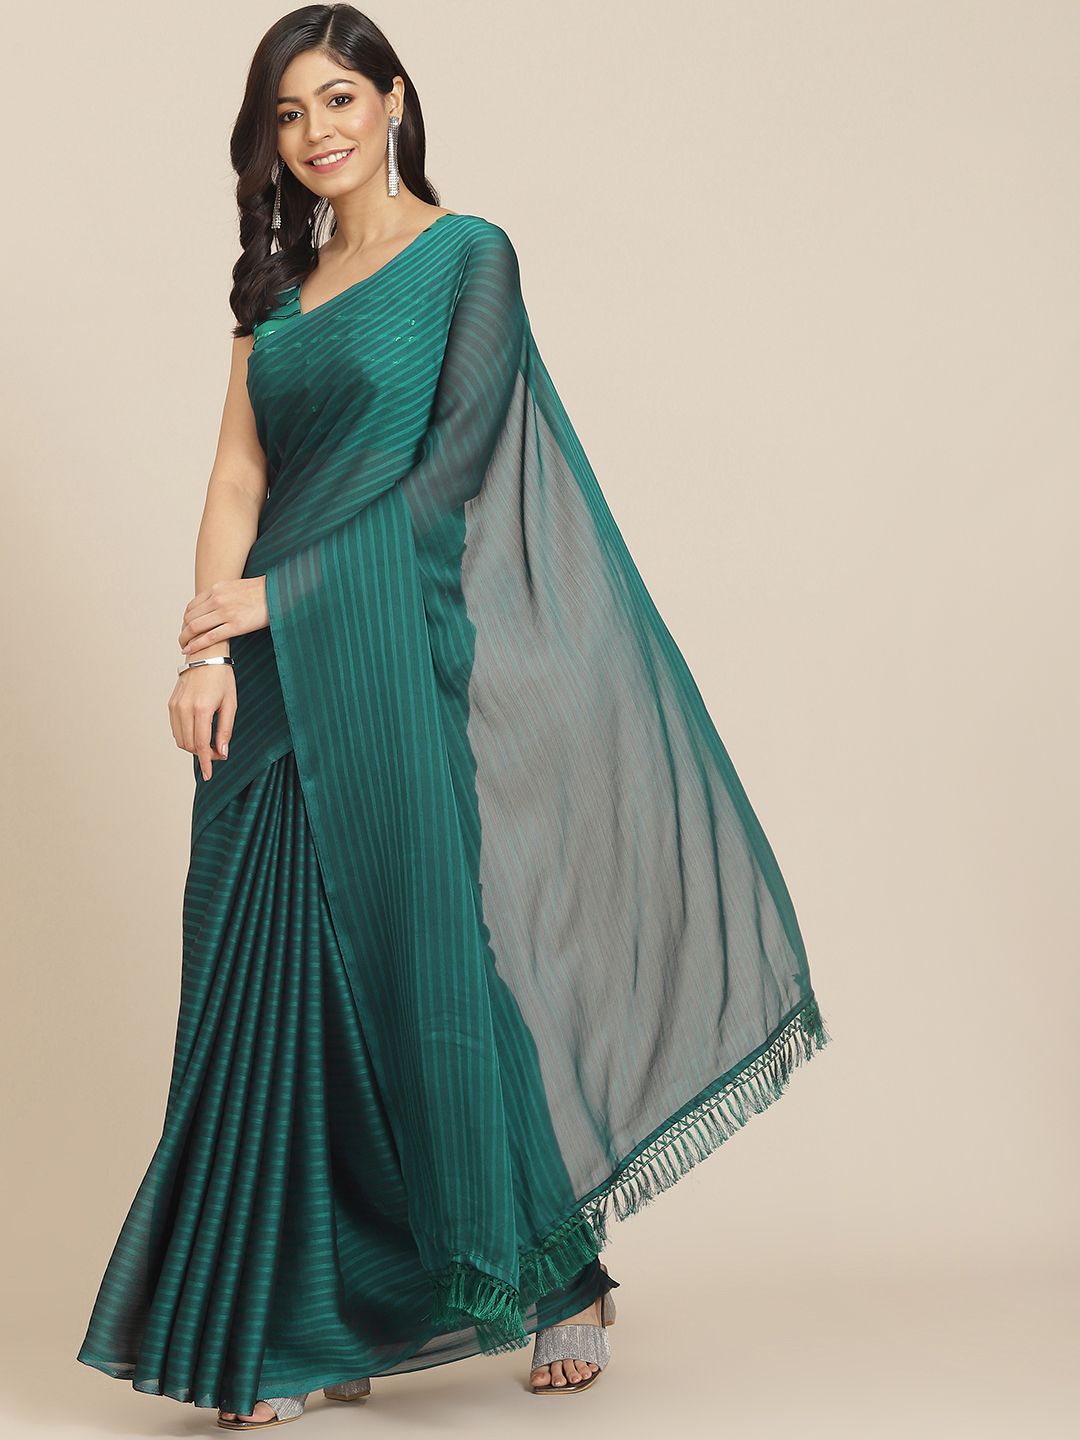 Tikhi Imli Teal Green Striped Saree Price in India